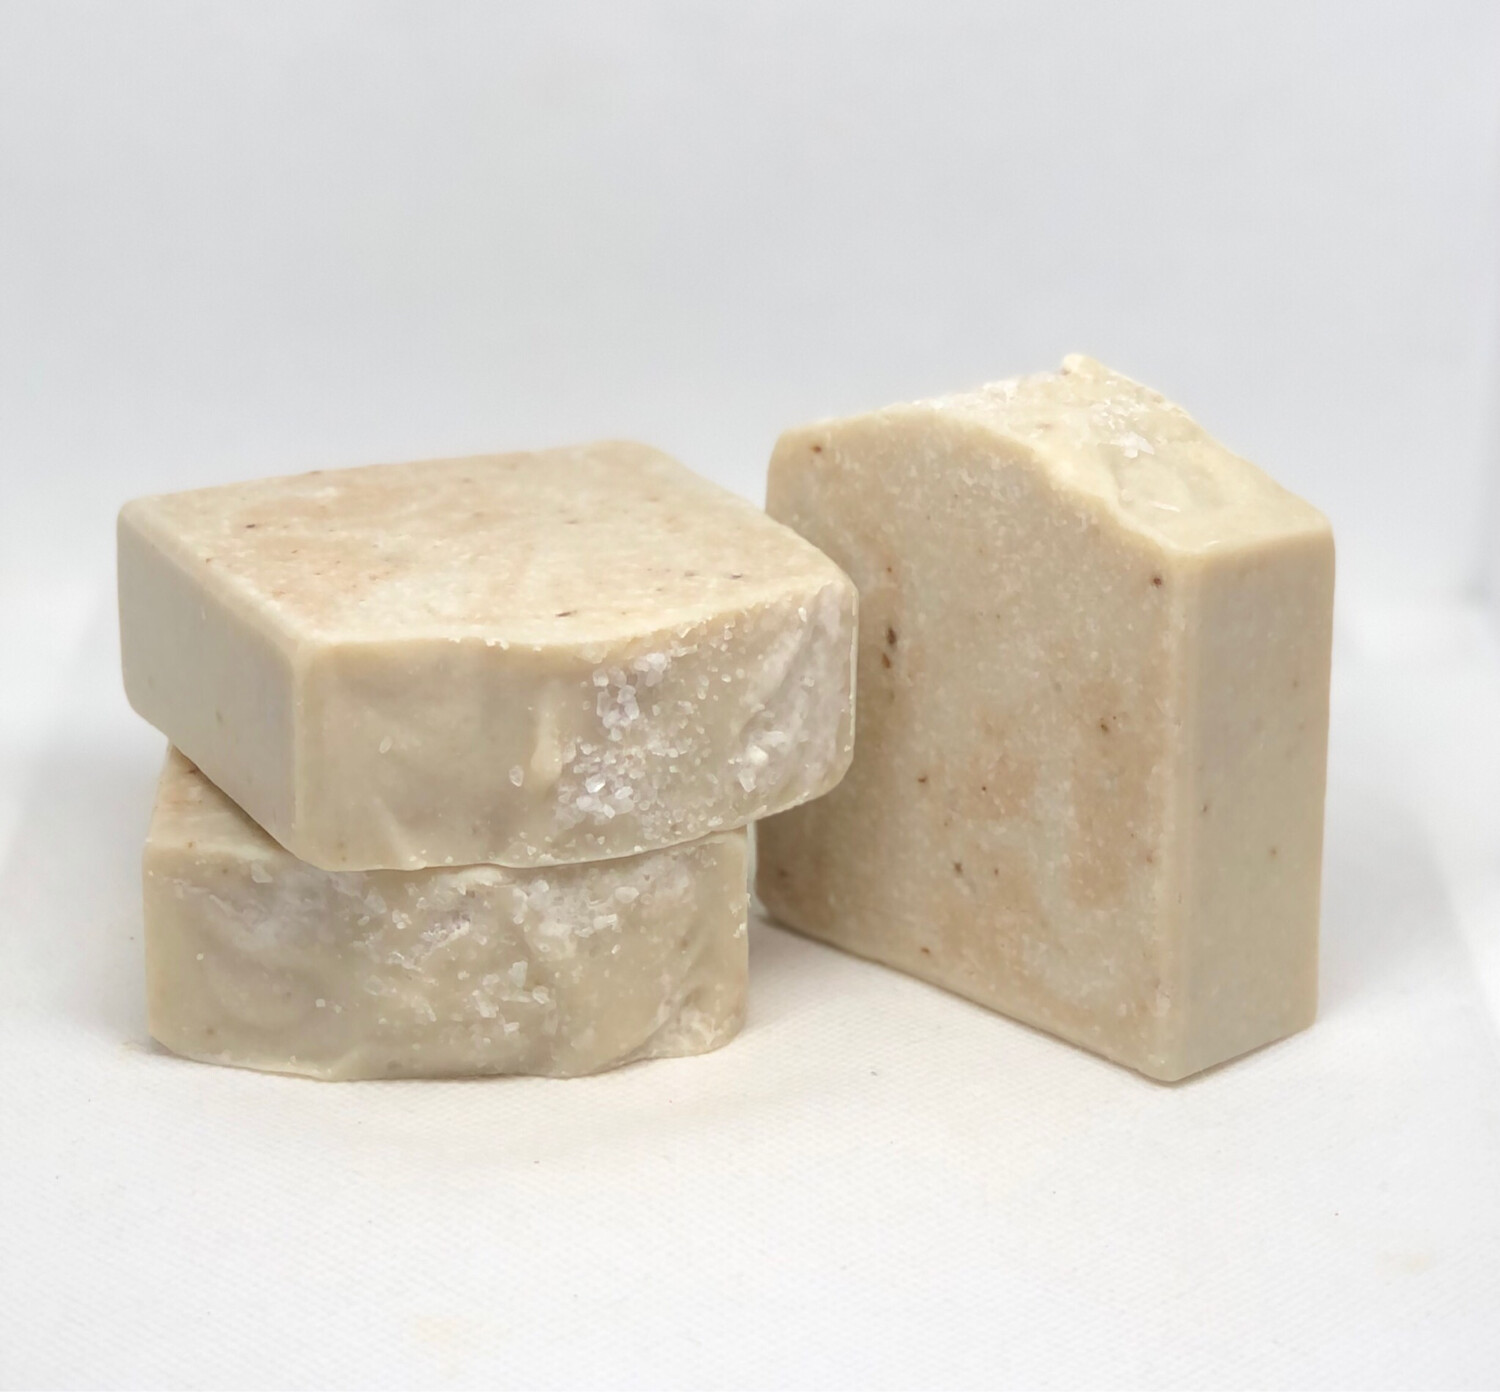 3 Seas Spa Soap “All Natural”